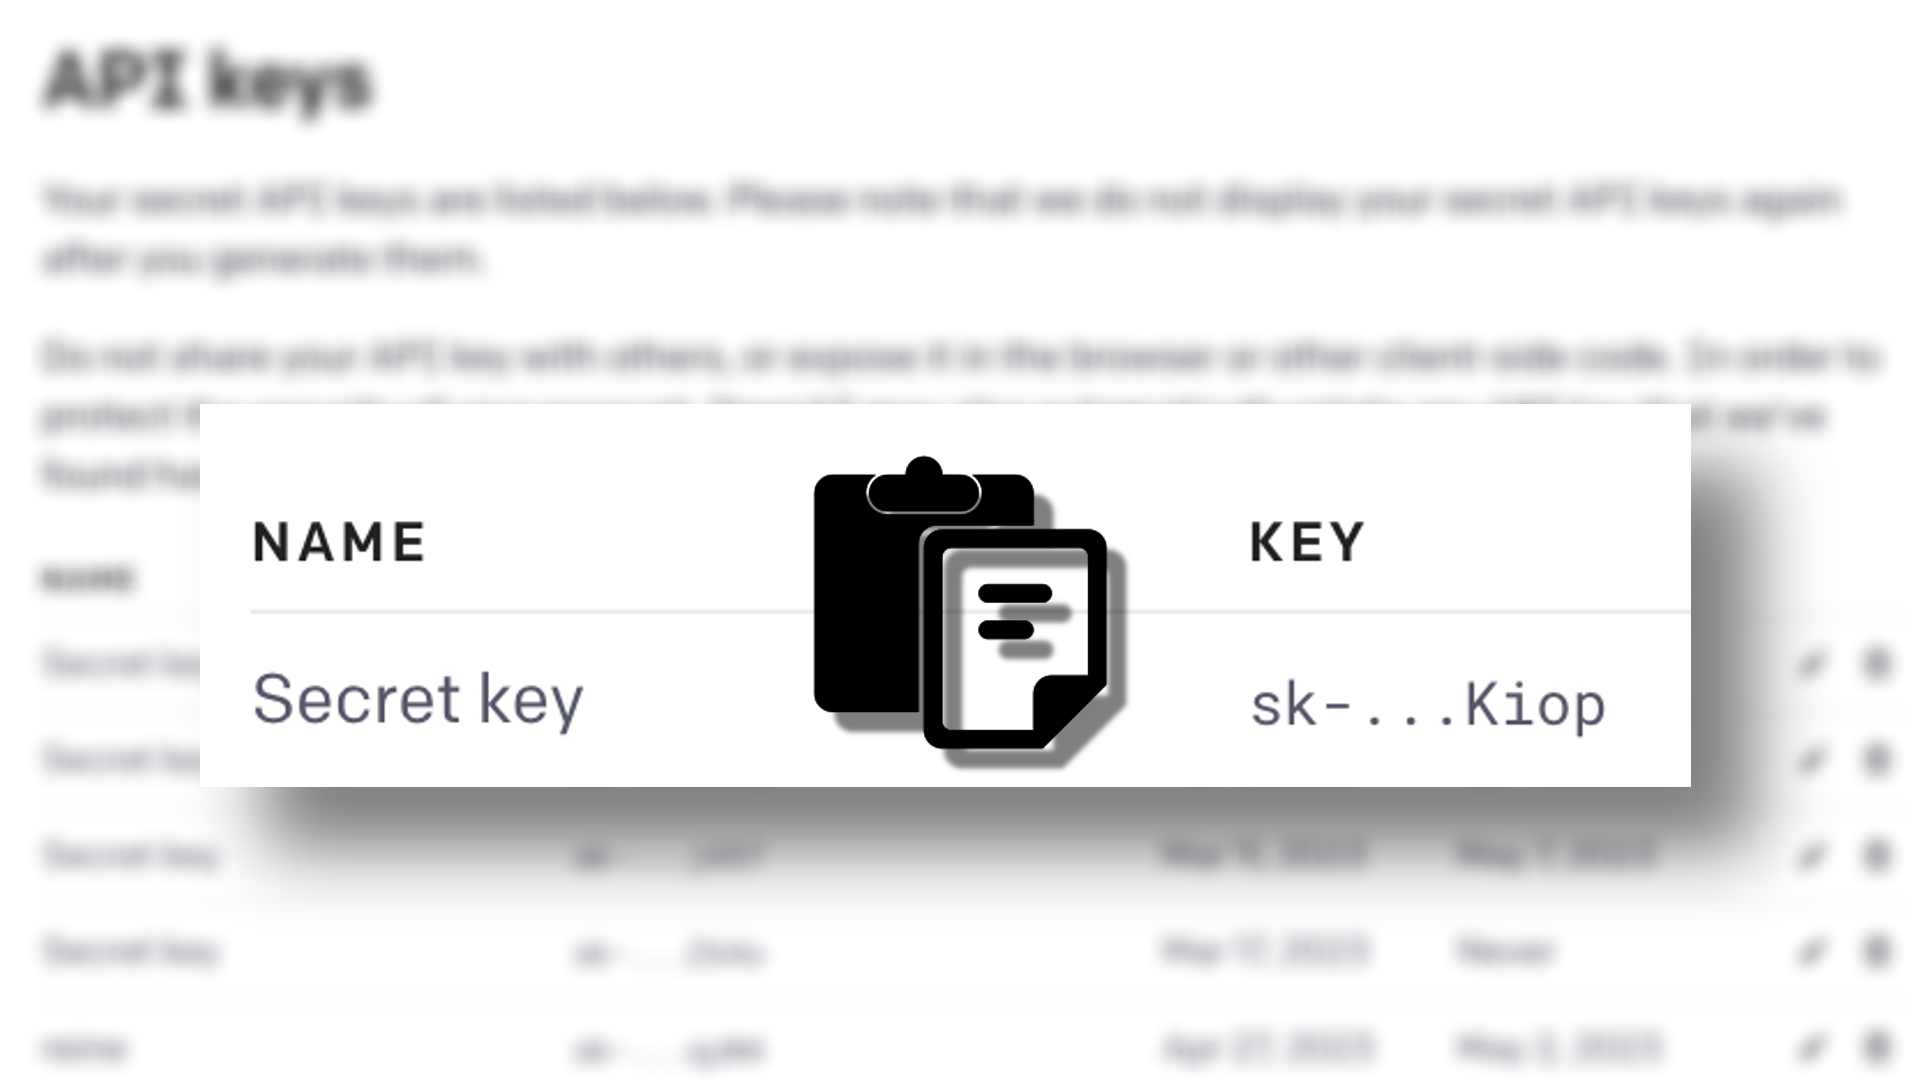 该图显示了用于身份验证的 API 密钥及其关联密钥的示例。全文：API 密钥 NAME KEY 秘密密钥 sk -... Kiop